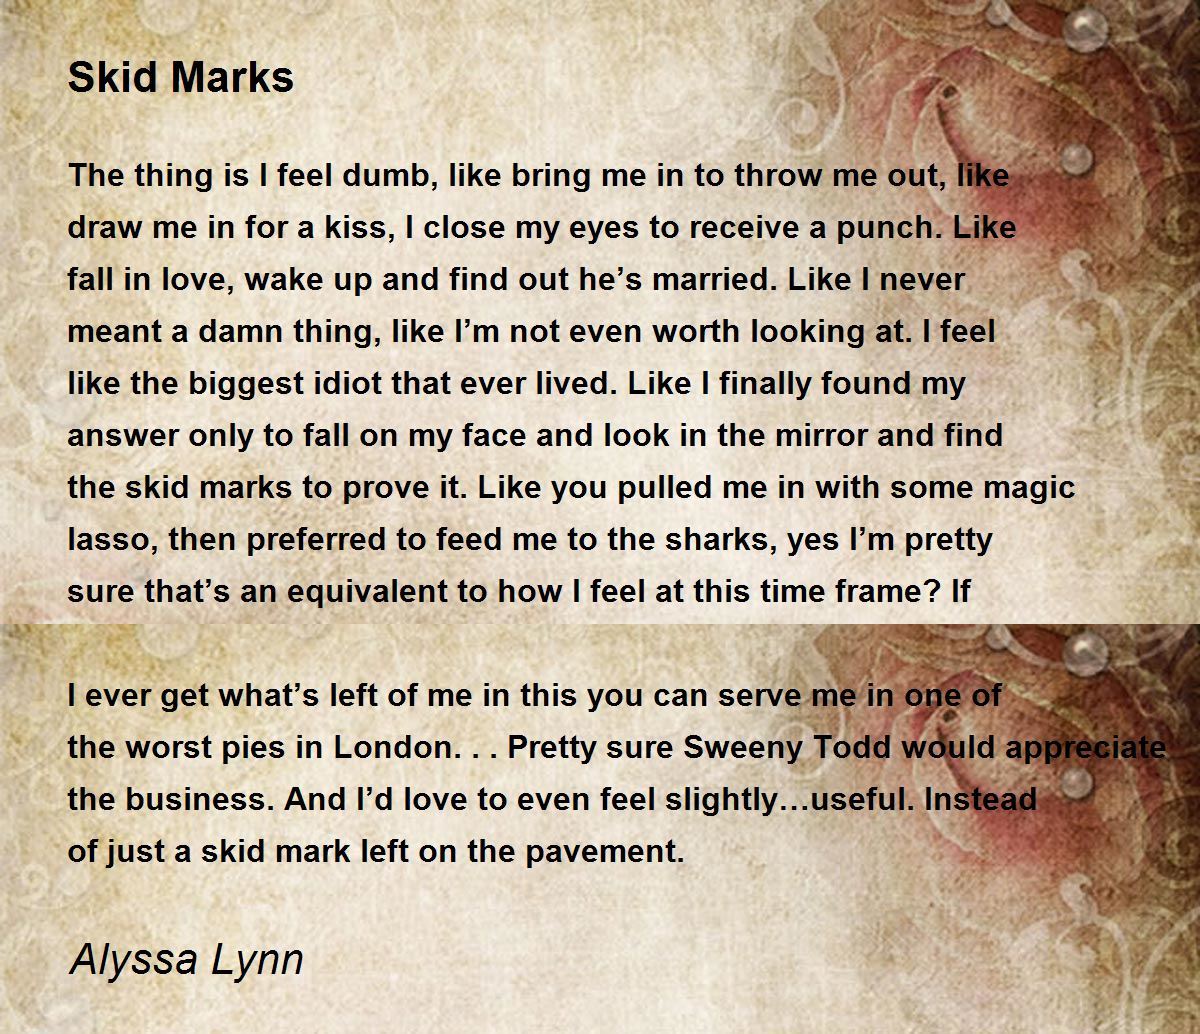 Skid Marks - Skid Marks Poem by Alyssa Lynn